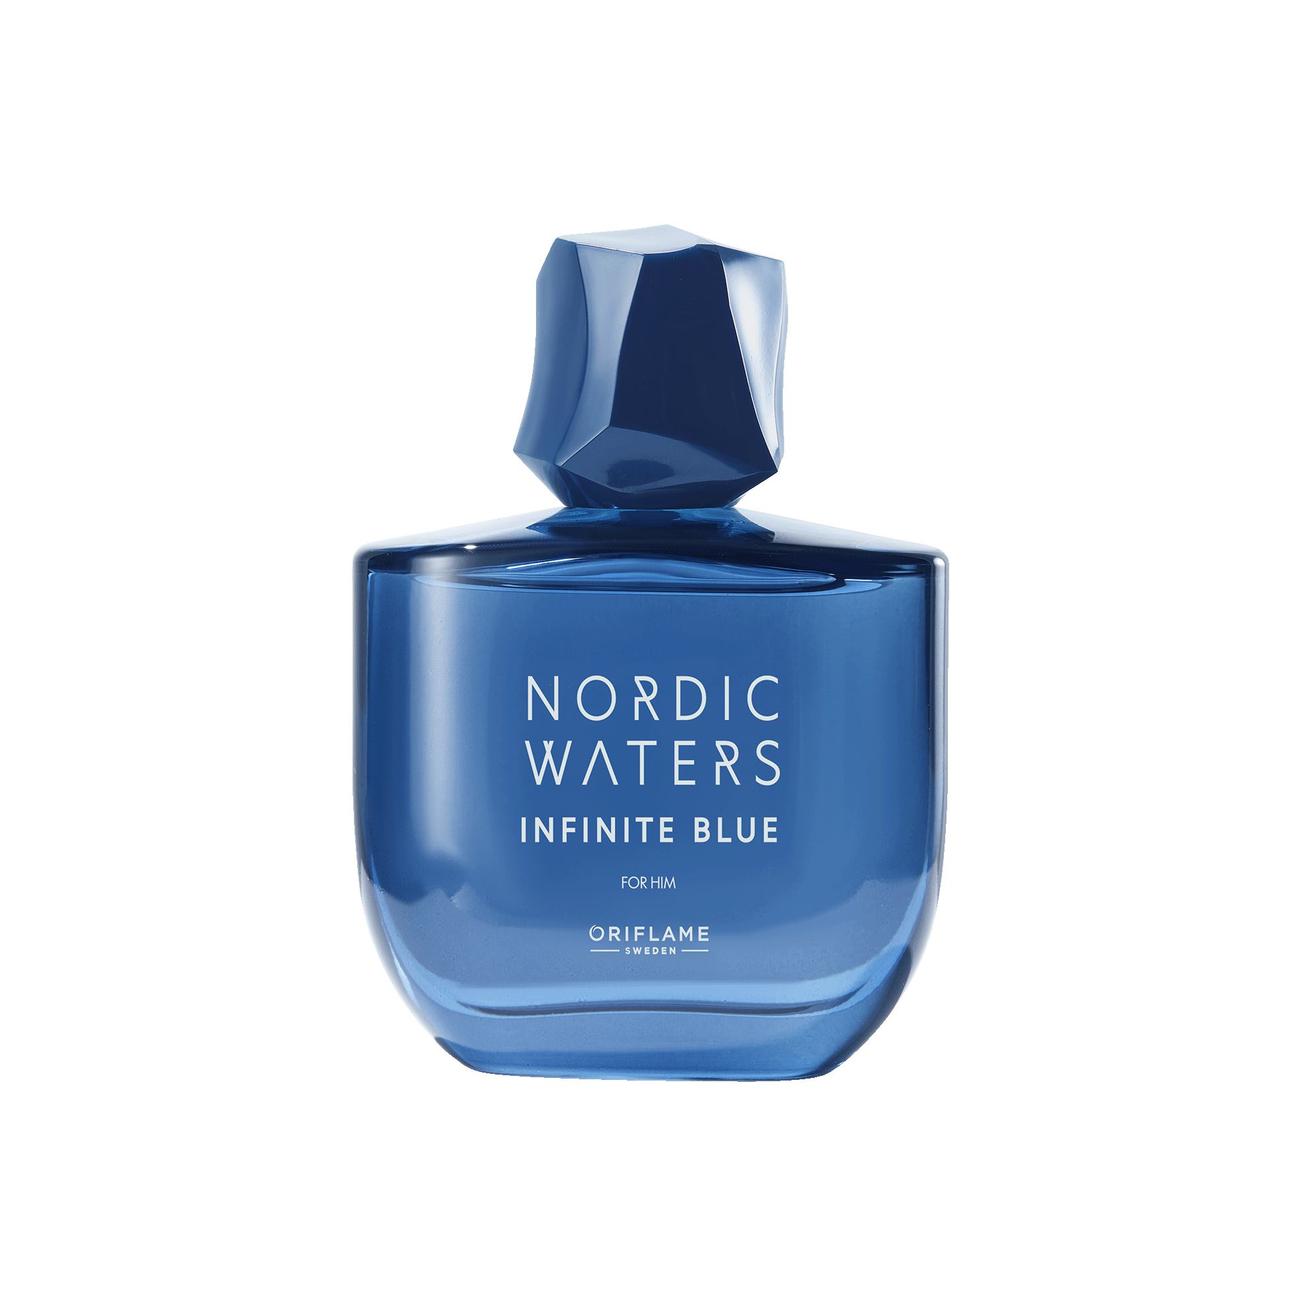 Oferta de Eau de Parfum Nordic Waters Infinite Blue para Él por 28,99€ en Oriflame